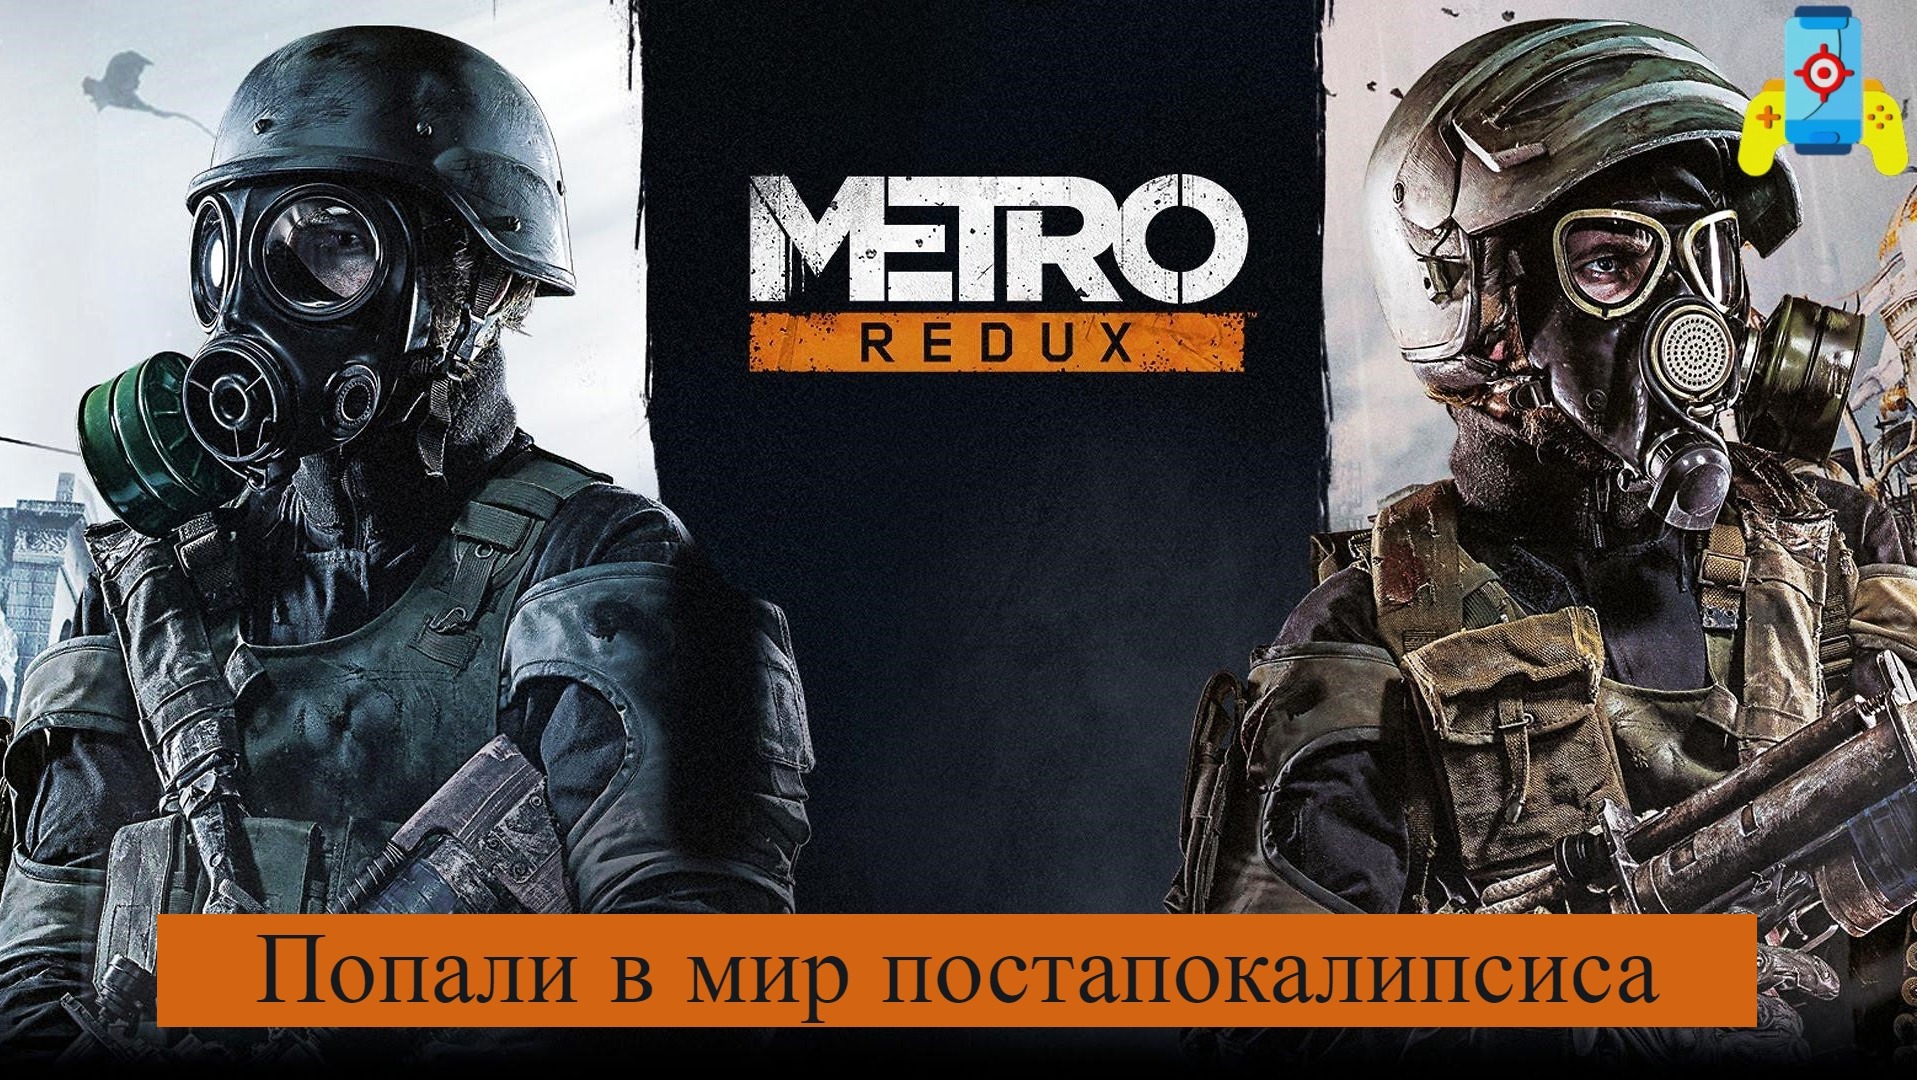 Metro 2033 Redux Попали в мир постапокалипсиса №1